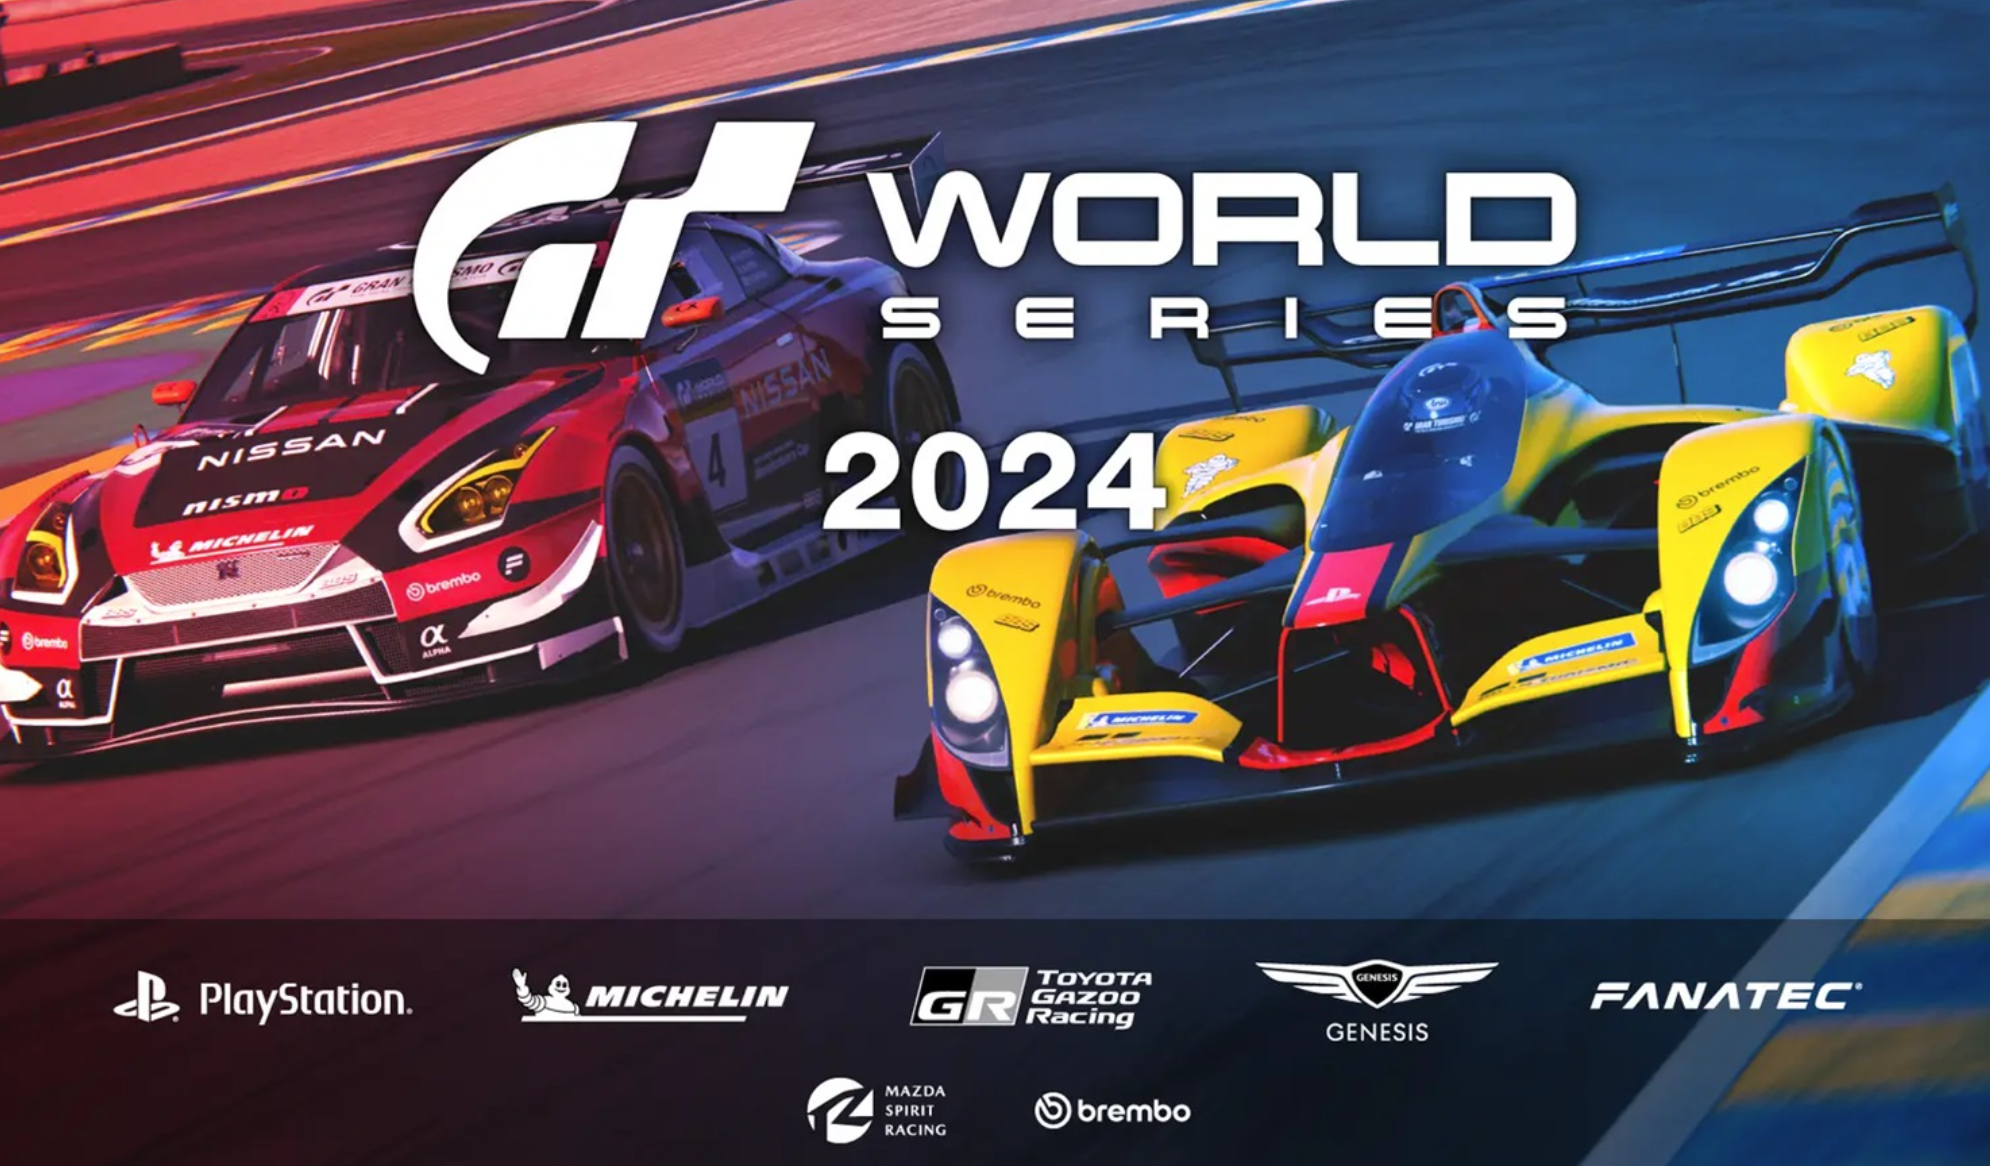 La Gran Turismo World Series 2024 empieza el 17 de abril!